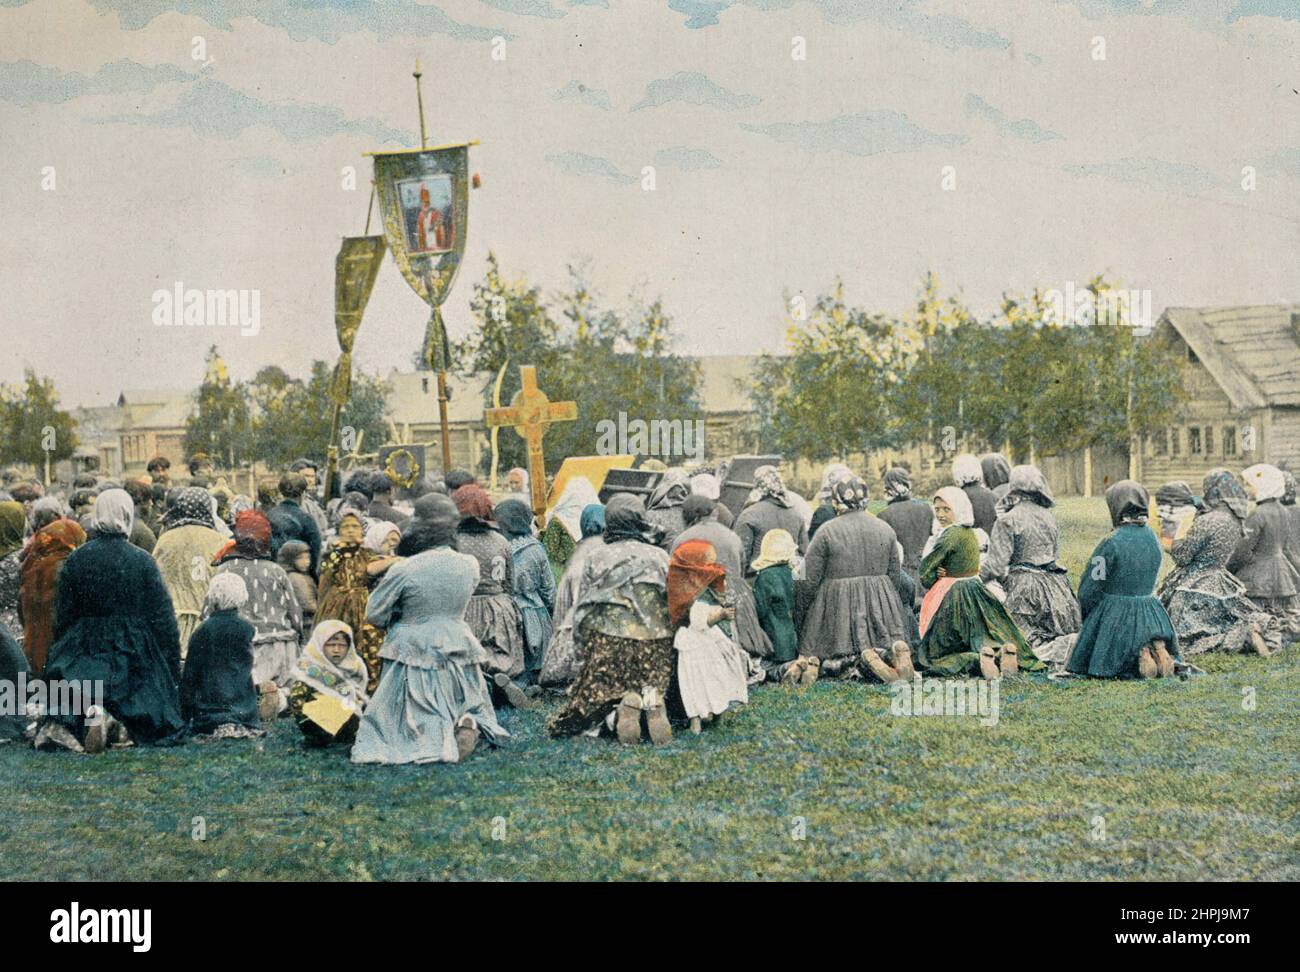 PROZESSION AU DORF. Autour Du Monde Russie 1895 - 1900 Kostüme Coutumes (2) - 19. Jahrhundert französischer Farbfotografiedruck Stockfoto